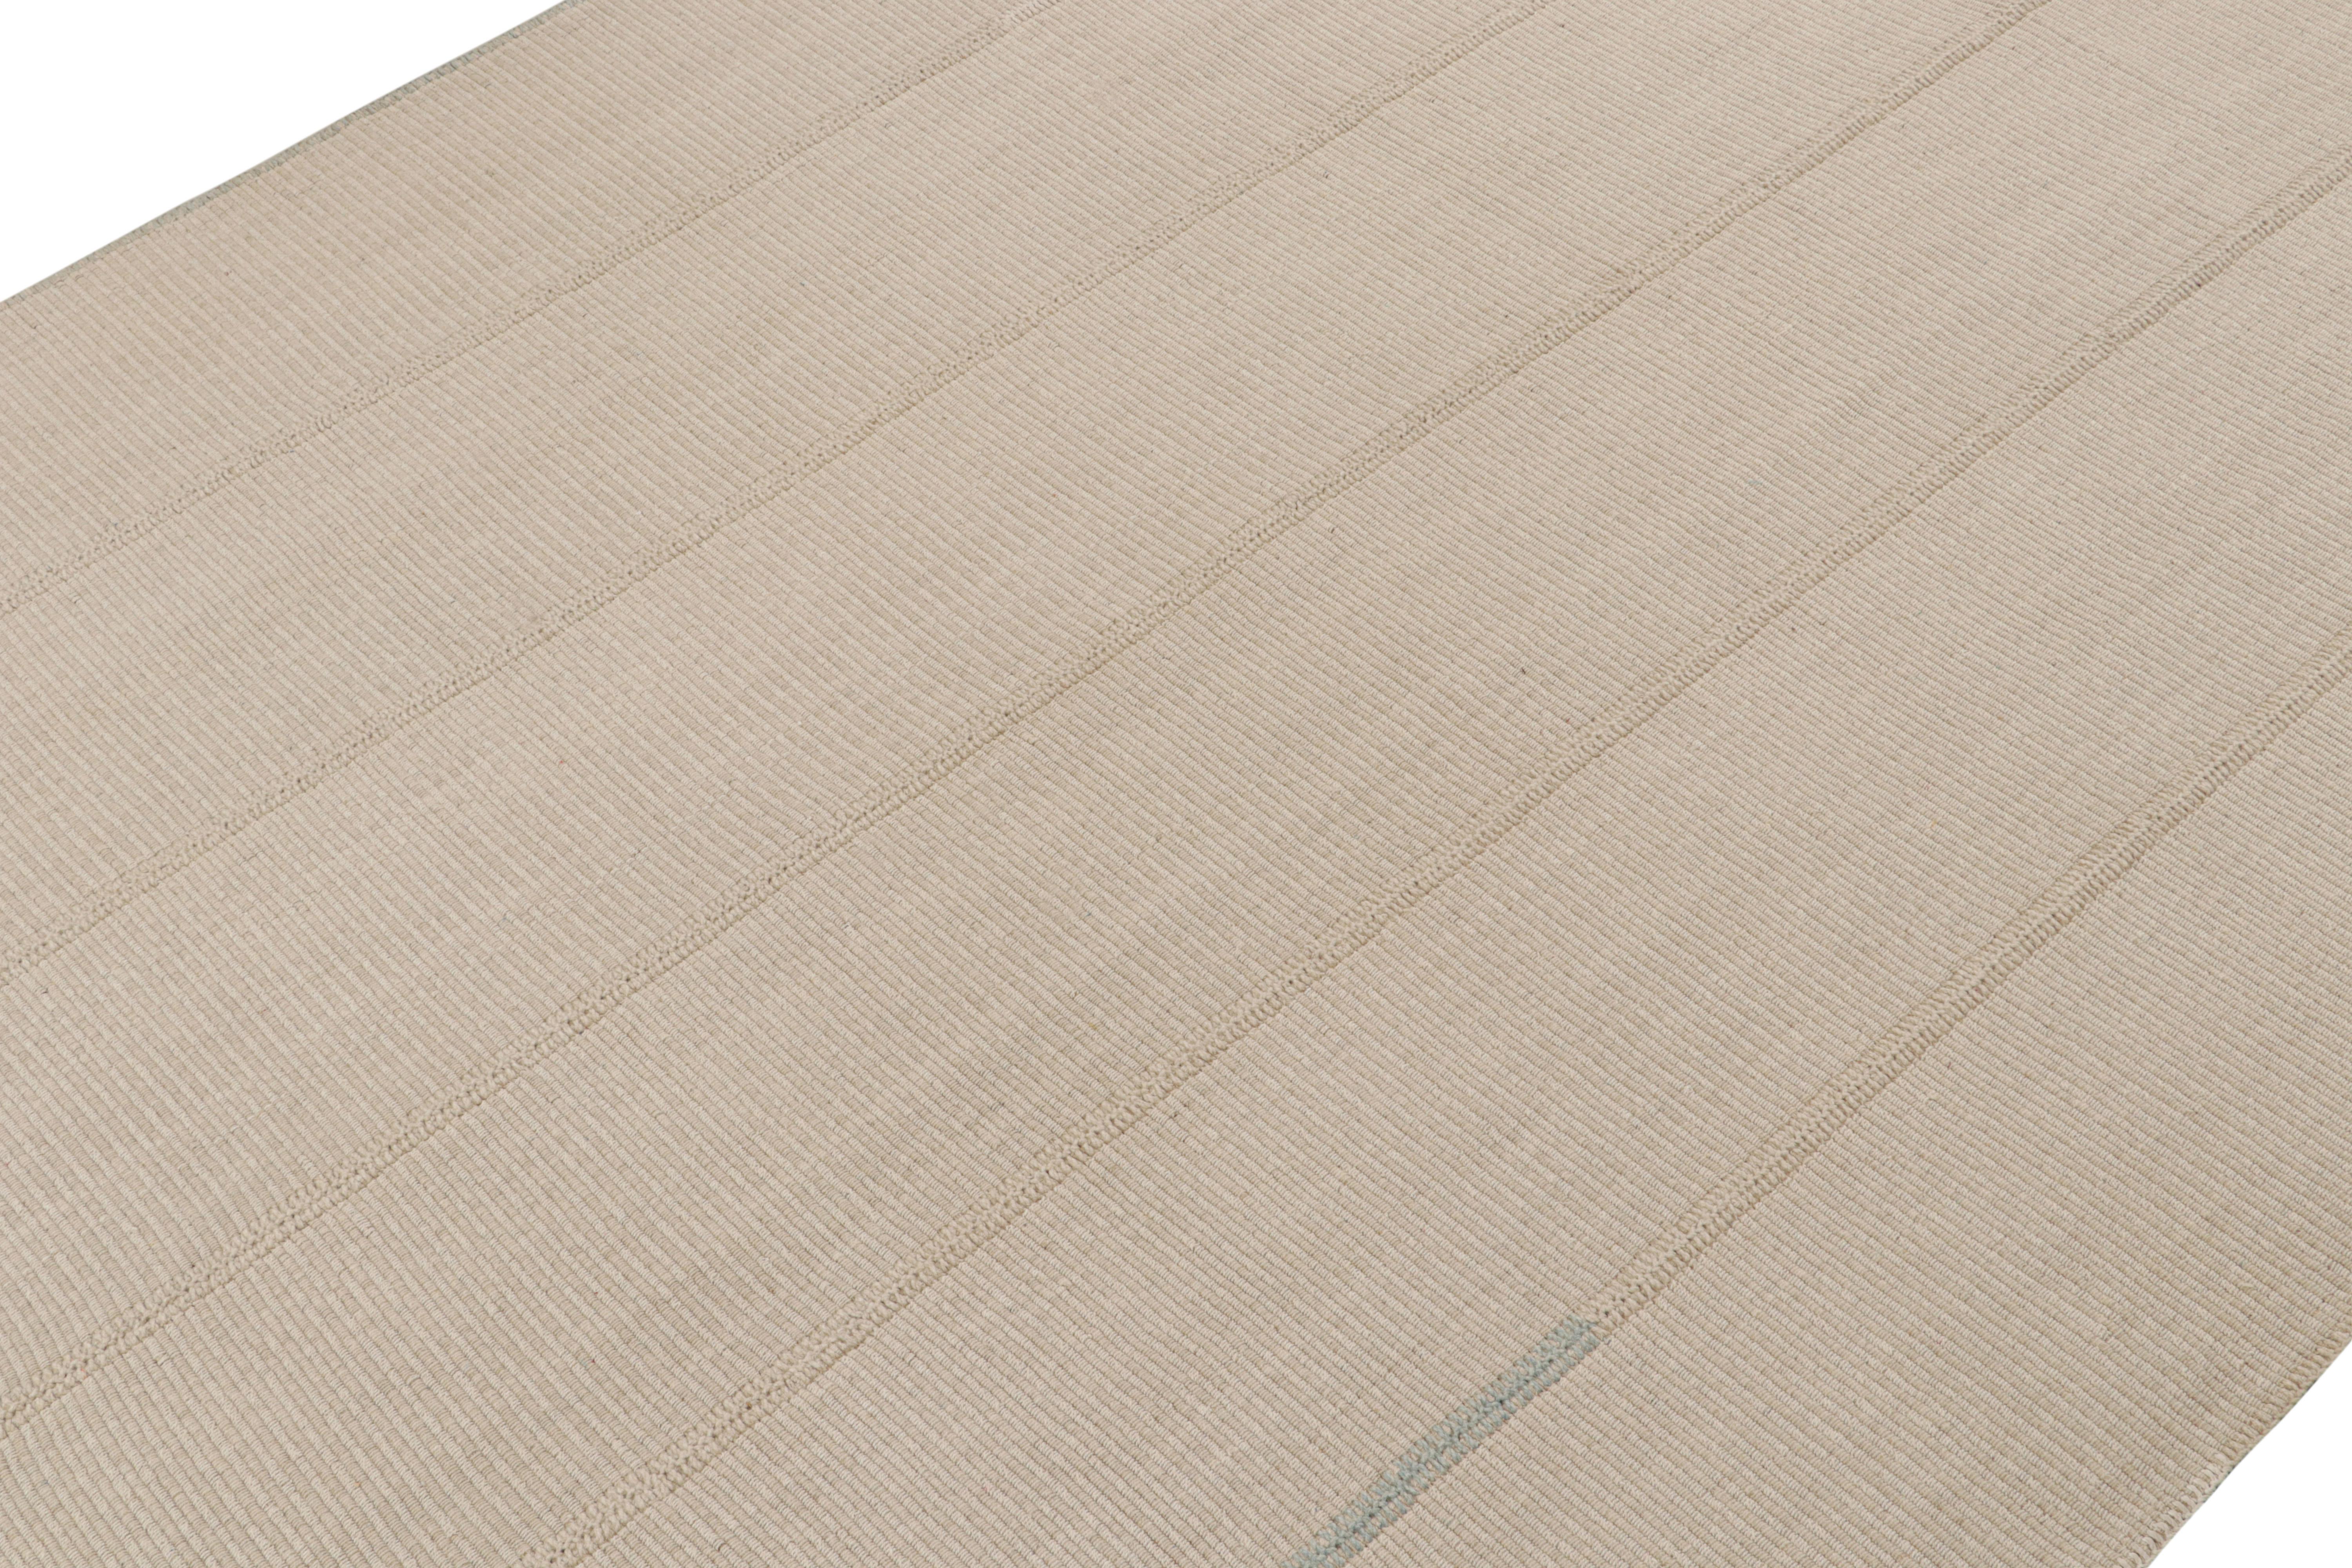 Handgewebter 9x12-Kilim aus Wolle von Rug & Kilim, einer kühnen neuen Linie zeitgenössischer Flachgewebe.

Über das Design: 

Unser neuester 